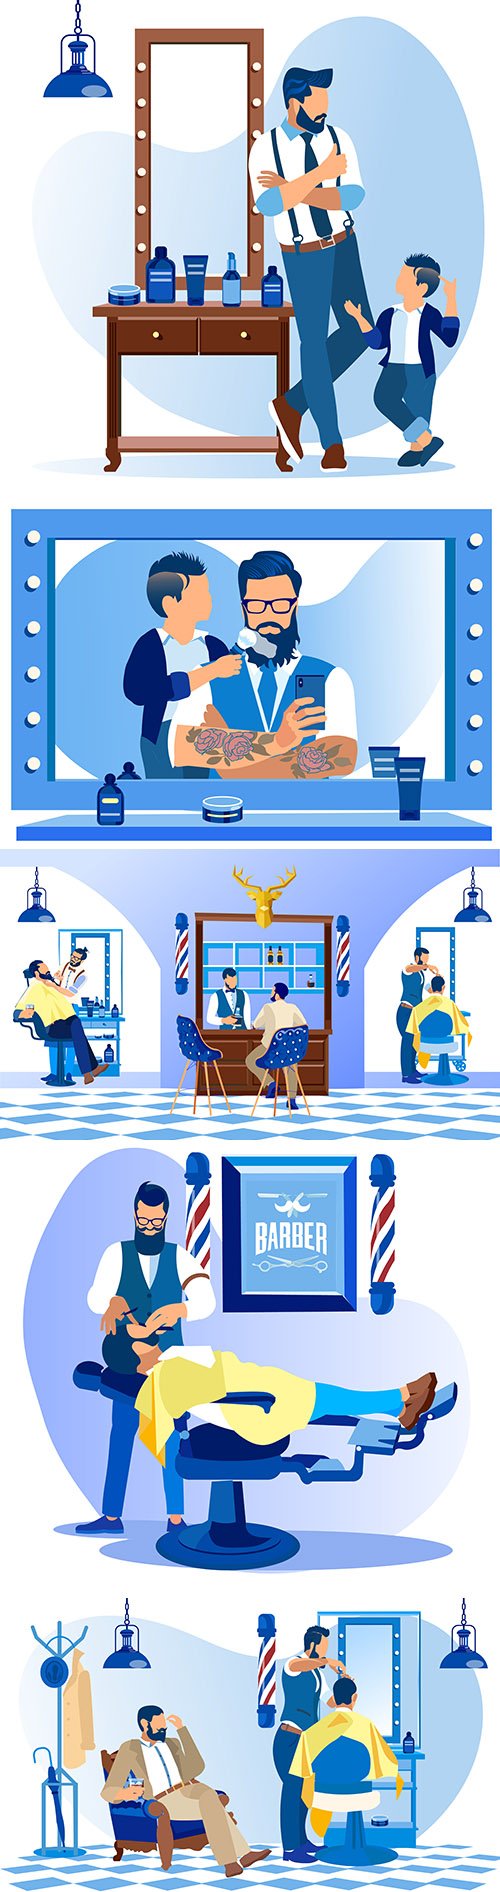 Professional beauty salon, men 's hair salon illustration